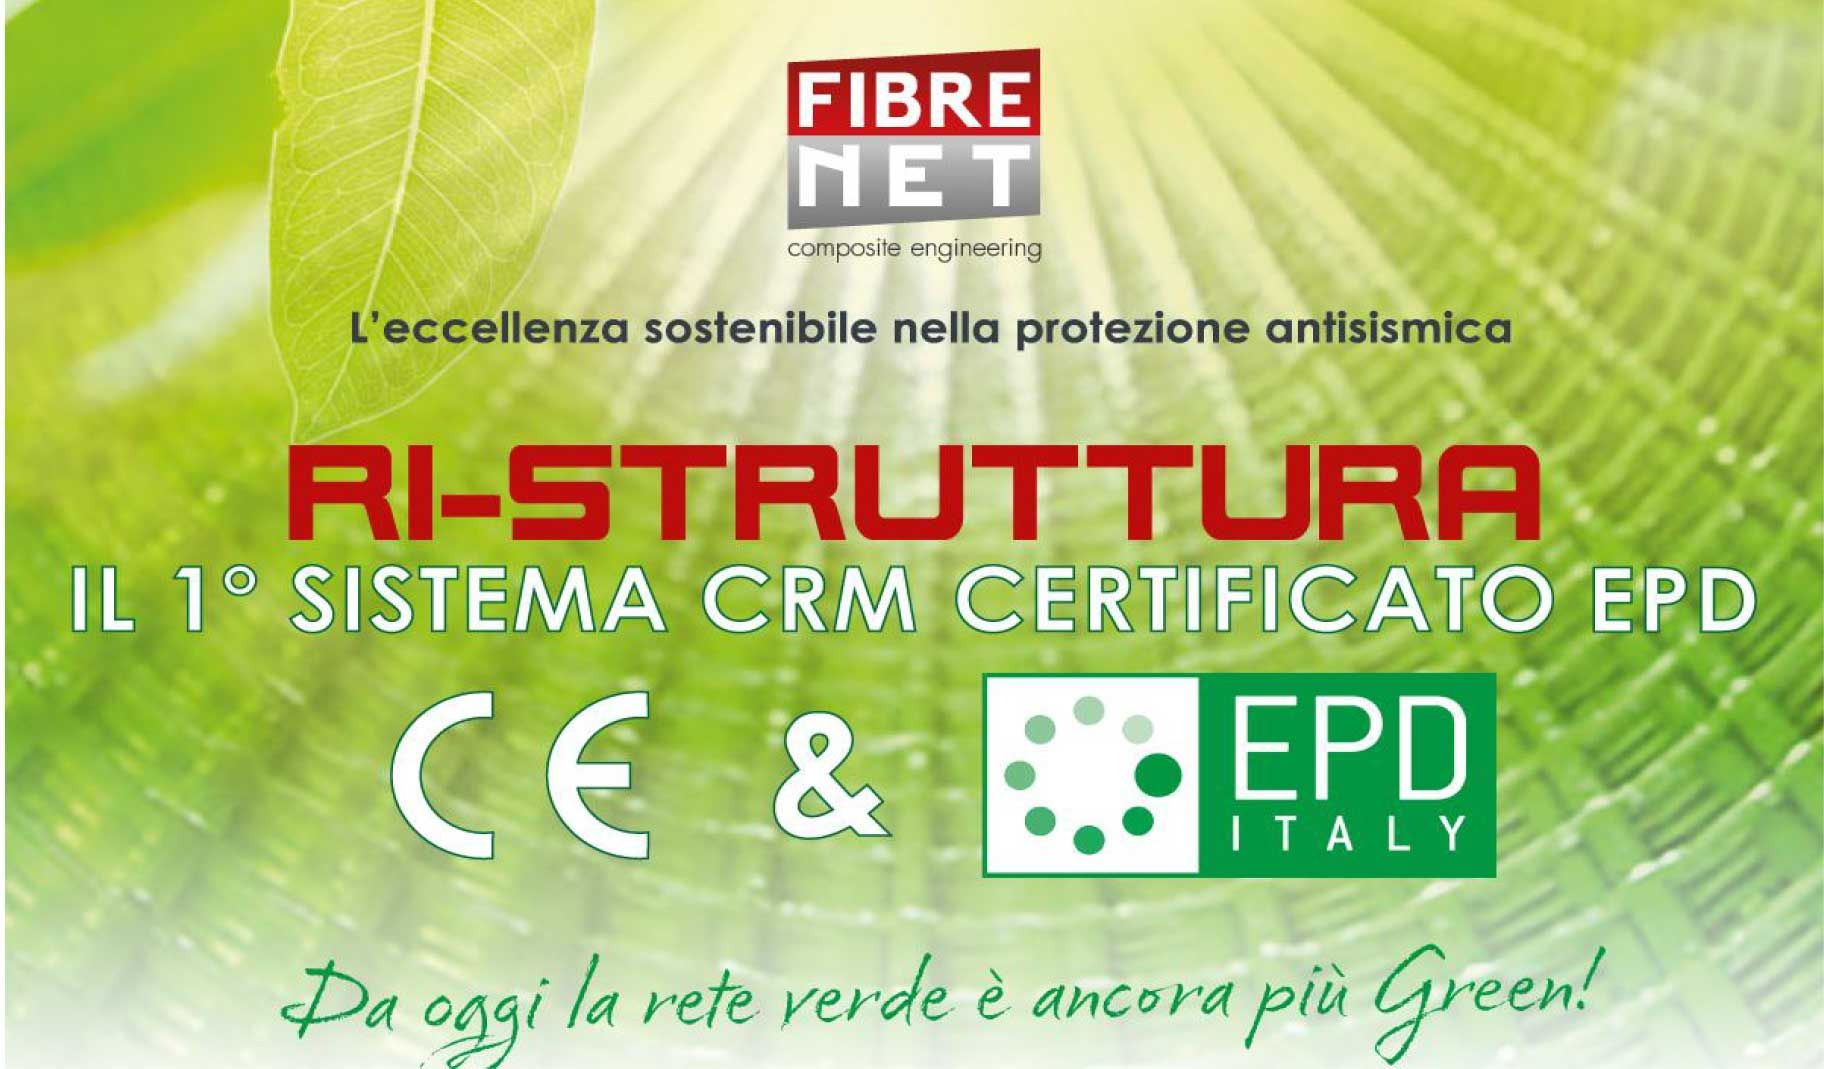 Fibre Net ottiene l'EPD per il sistema CRM RI-STRUTTURA: l’evoluzione sostenibile nel settore delle costruzioni. 
Da oggi la rete verde è ancora più green!